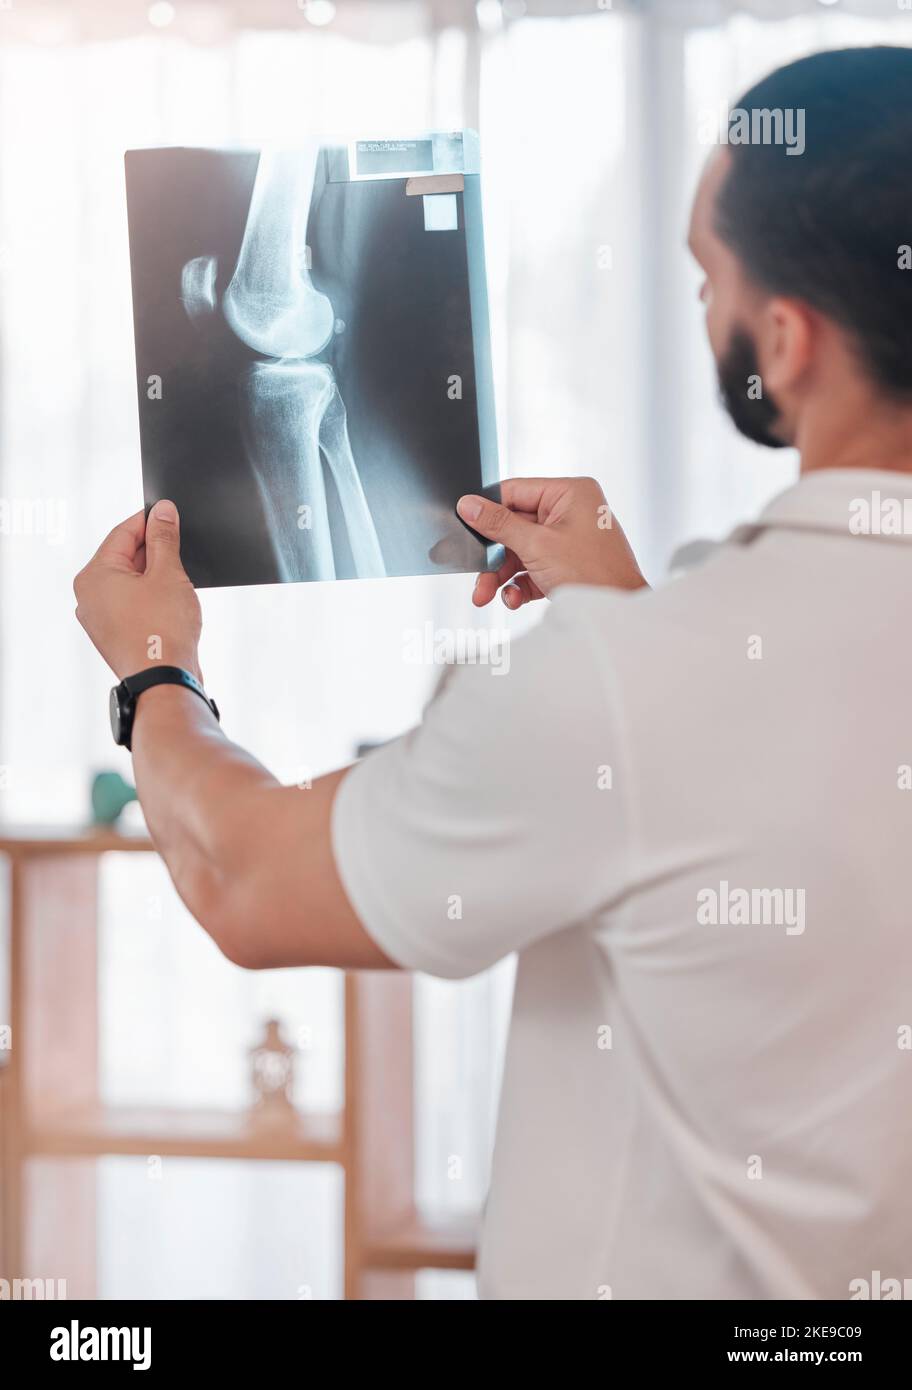 Uomo, fisioterapista e analisi radiografica in clinica sportiva per il controllo delle ossa rotte, il benessere sanitario o la pianificazione chirurgica delle lesioni al ginocchio. Medico Foto Stock